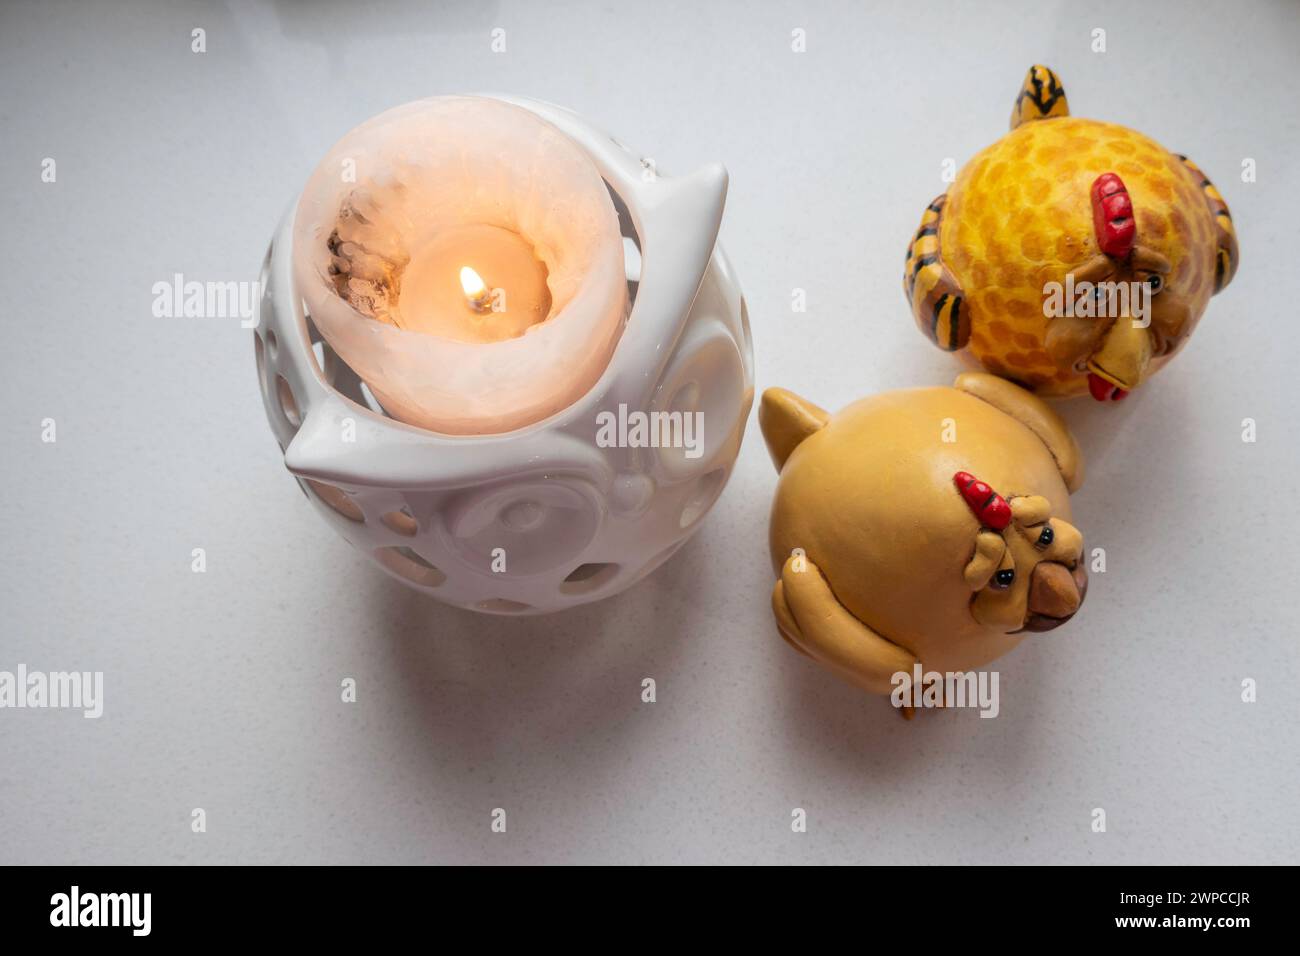 Eine Kerze neben zwei dekorativen Hühnern von oben, weißer Hintergrund. Stockfoto